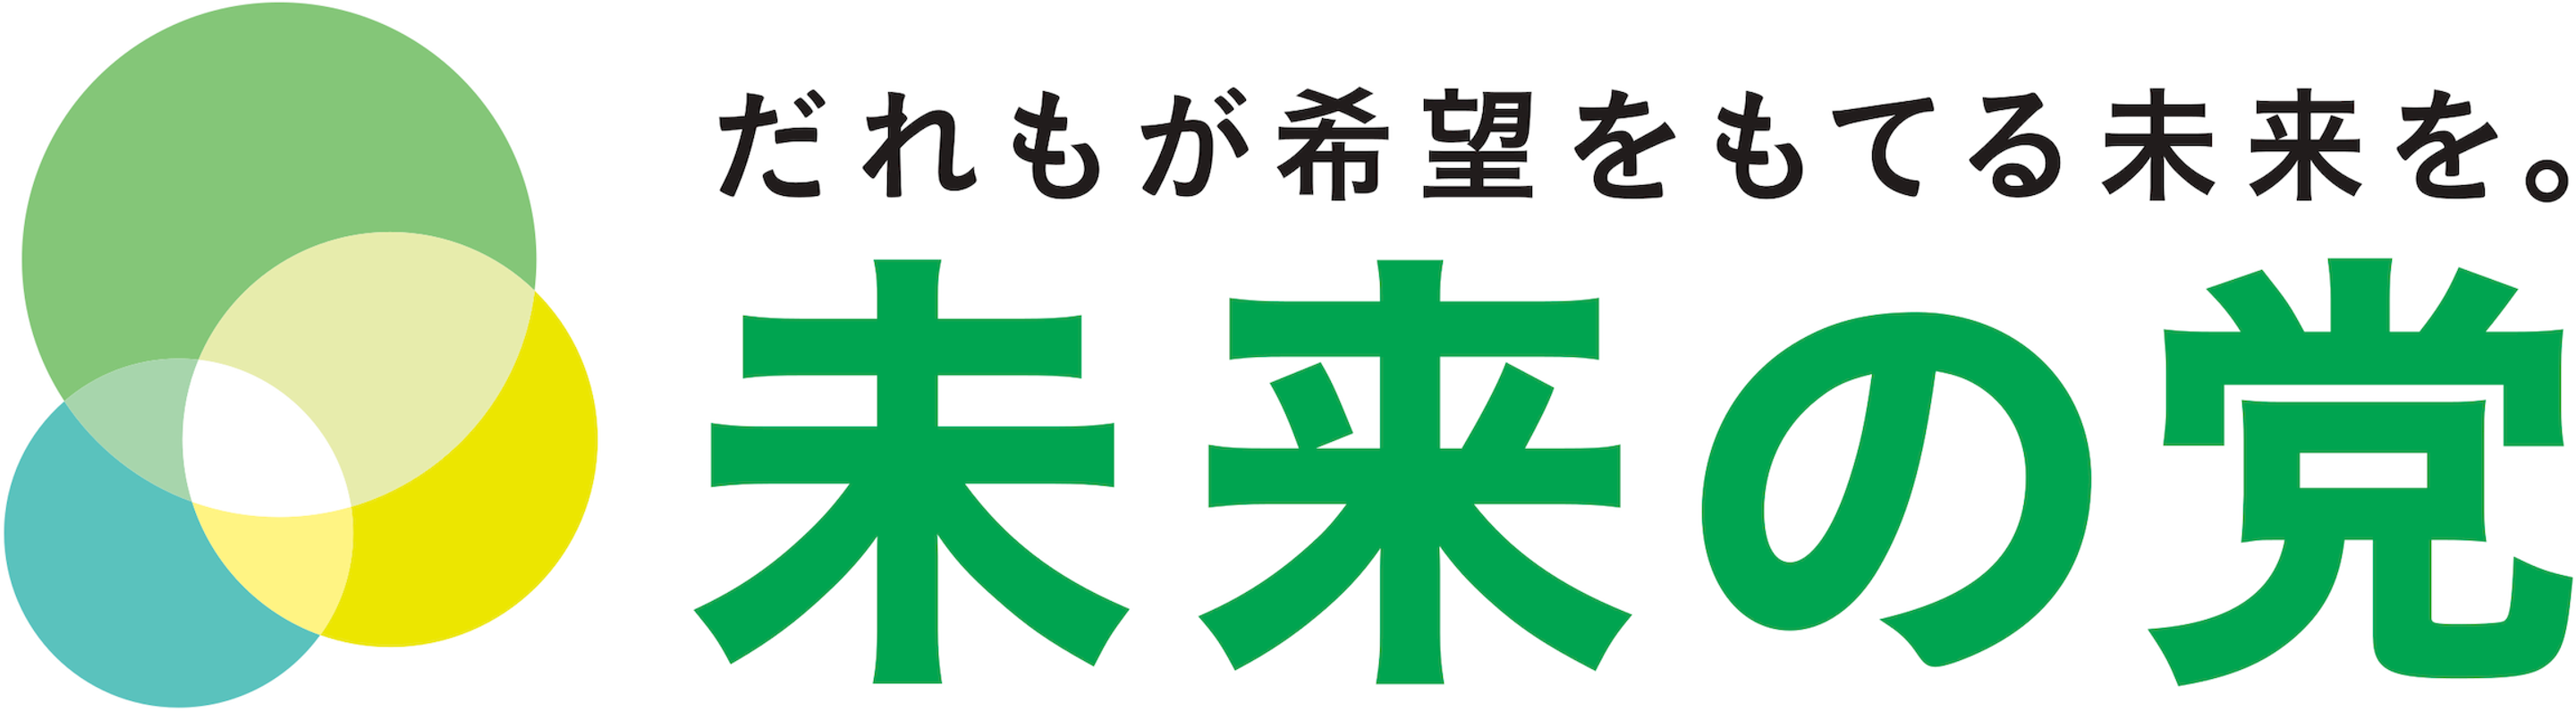 파일:일본 미래당 로고.png